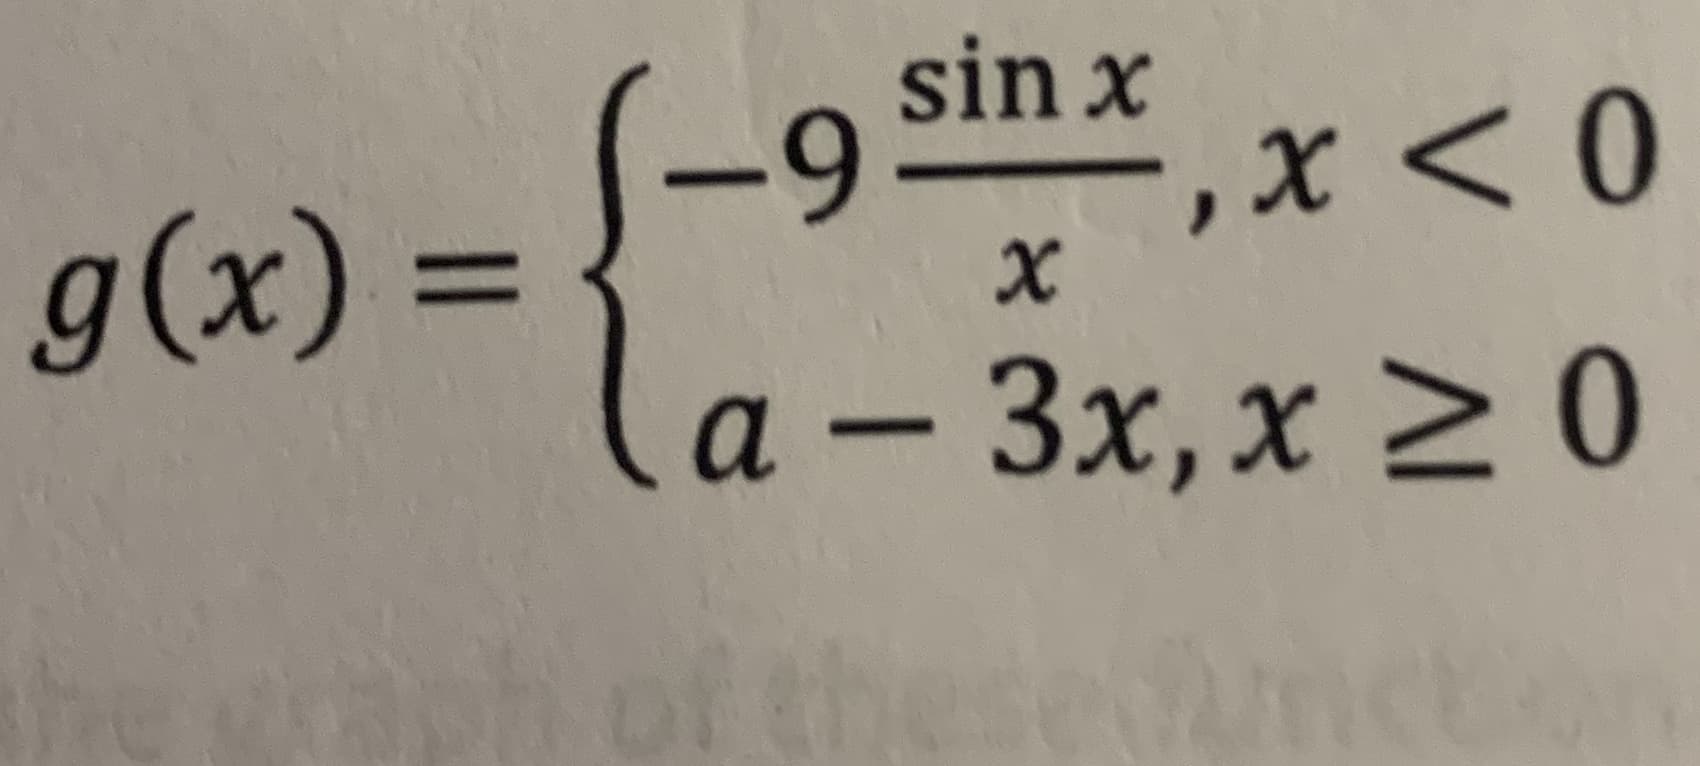 sin x
S-9
“,x < 0
g(x) =
%3D
3x,x >0
a –
